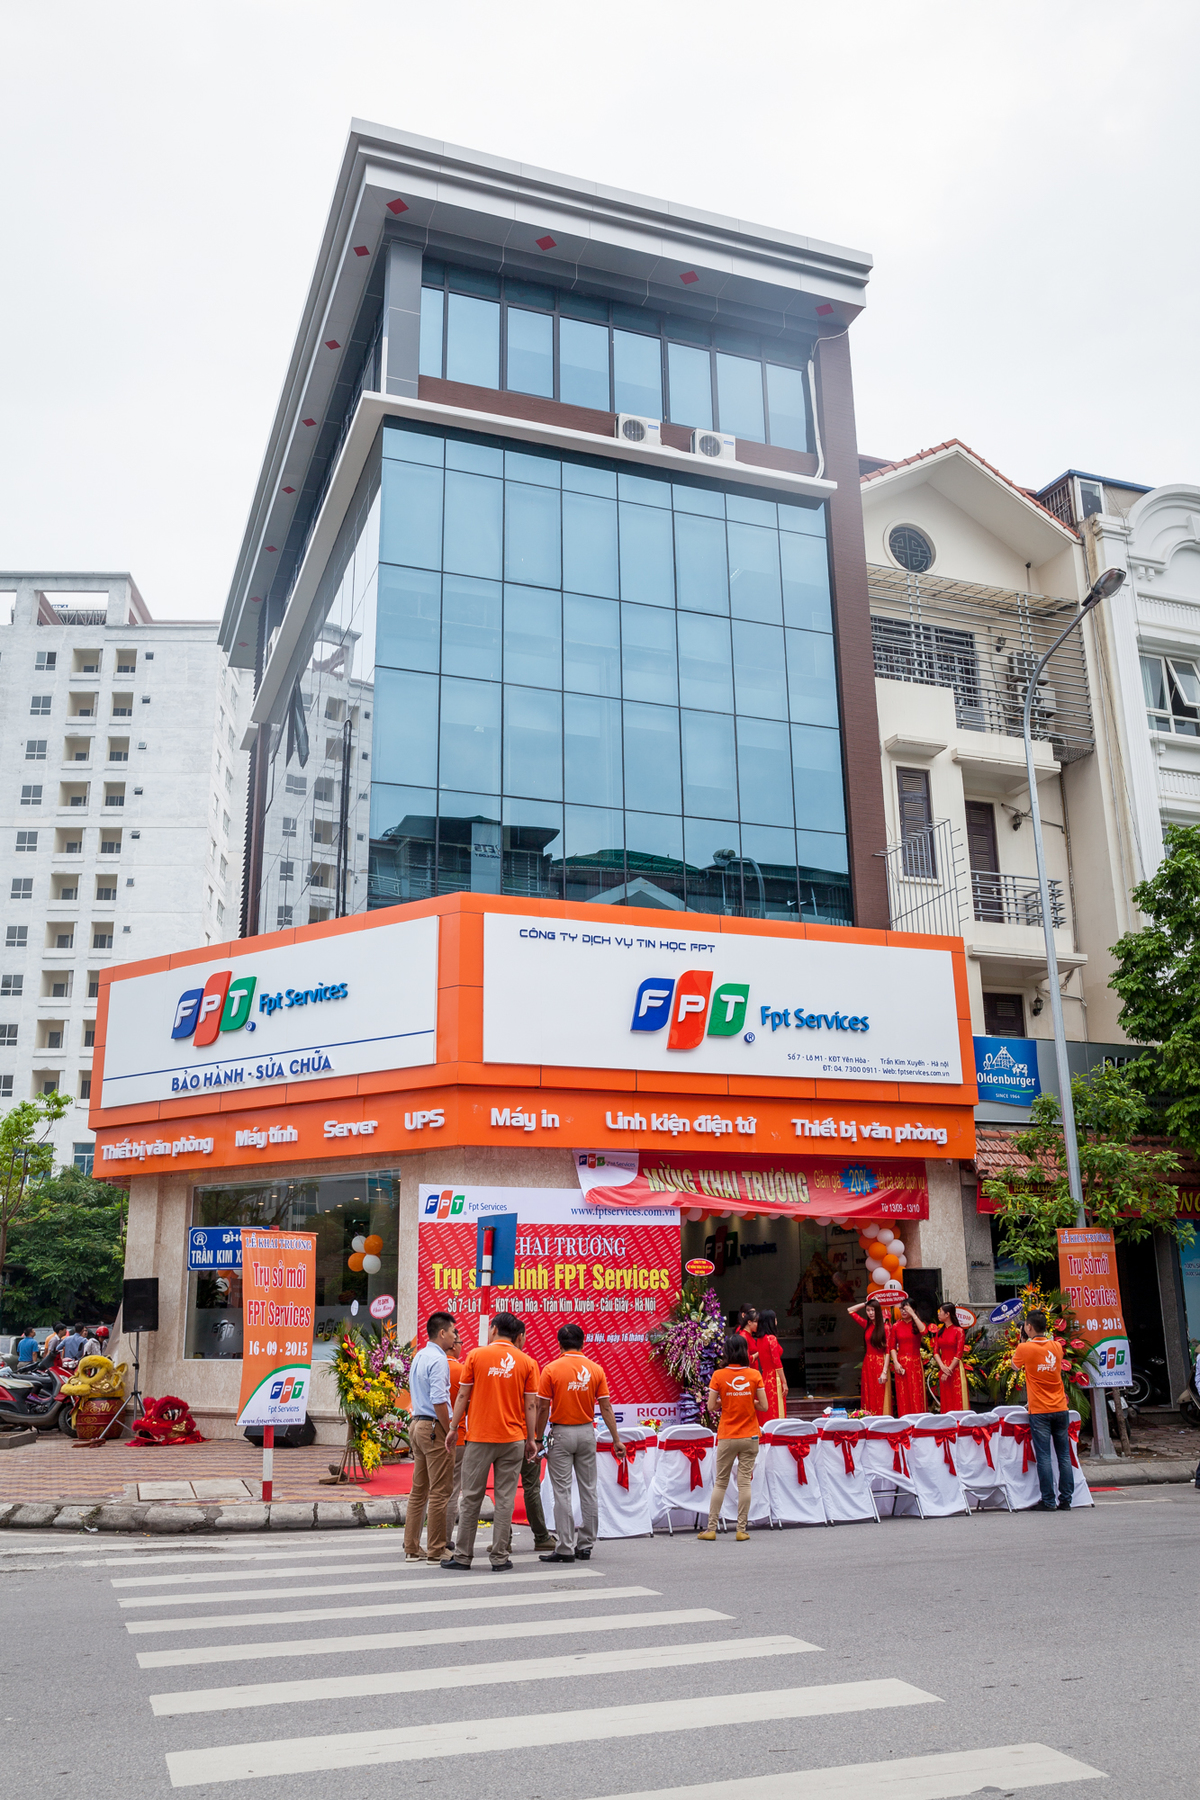 <p> Nằm ngay ở đầu phố Trần Kim Xuyến (Cầu Giấy, Hà Nội), trụ sở mới của FPT IS Services nổi bật và gây ấn tượng bởi biển hiệu màu cam rực rỡ, bắt mắt, kèm với đó là cửa kính trong suốt xung quanh hai mặt tiền tạo không gian sang trọng, lịch sự. </p>